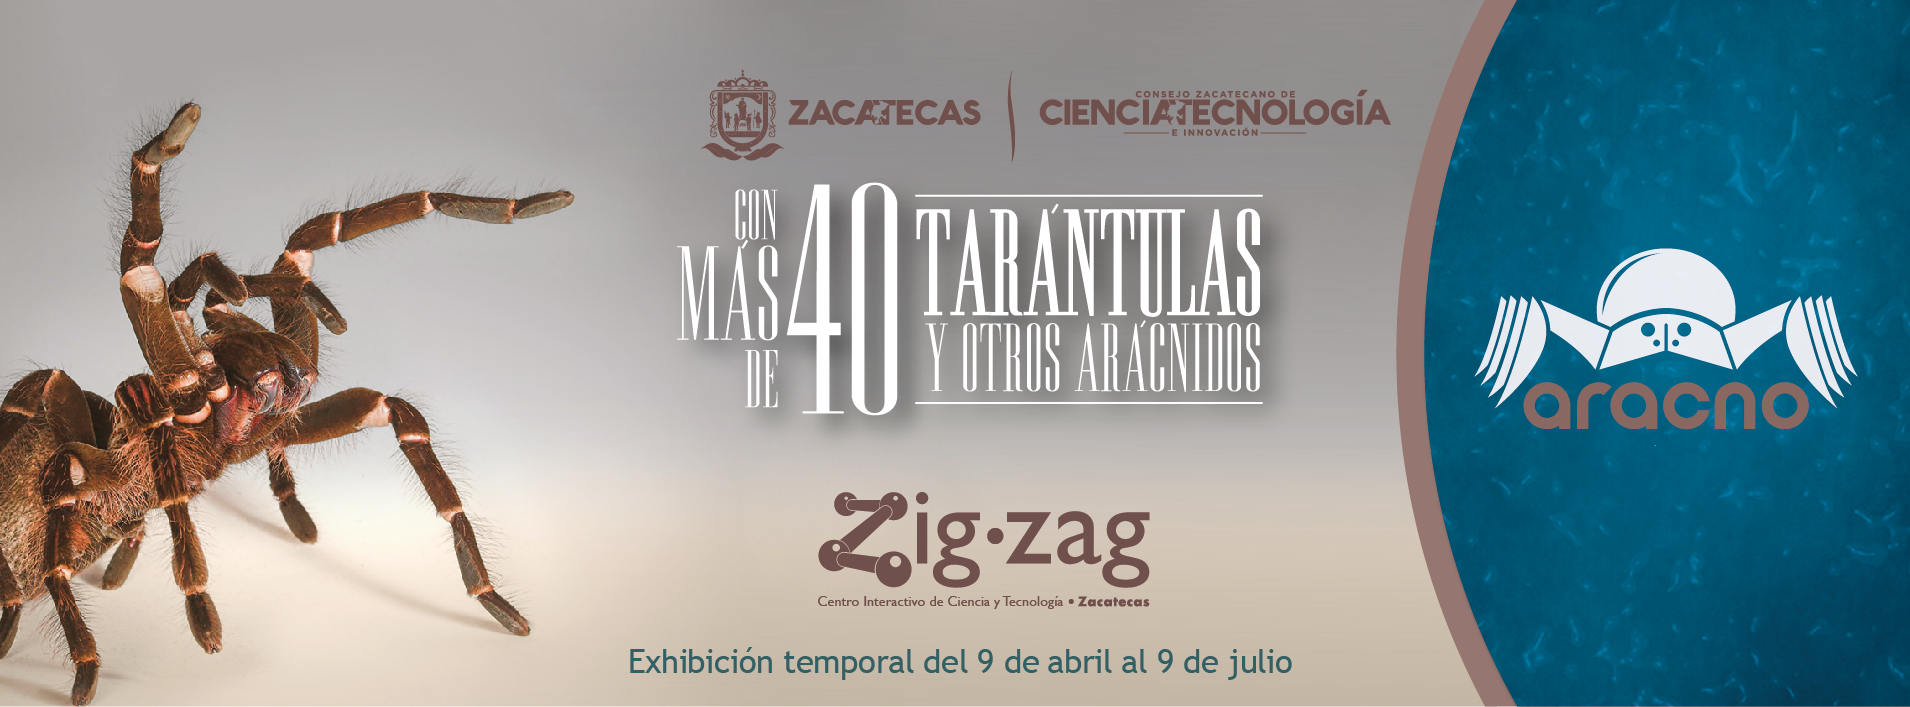 Exposición temporal «Aracno» en Zigzag